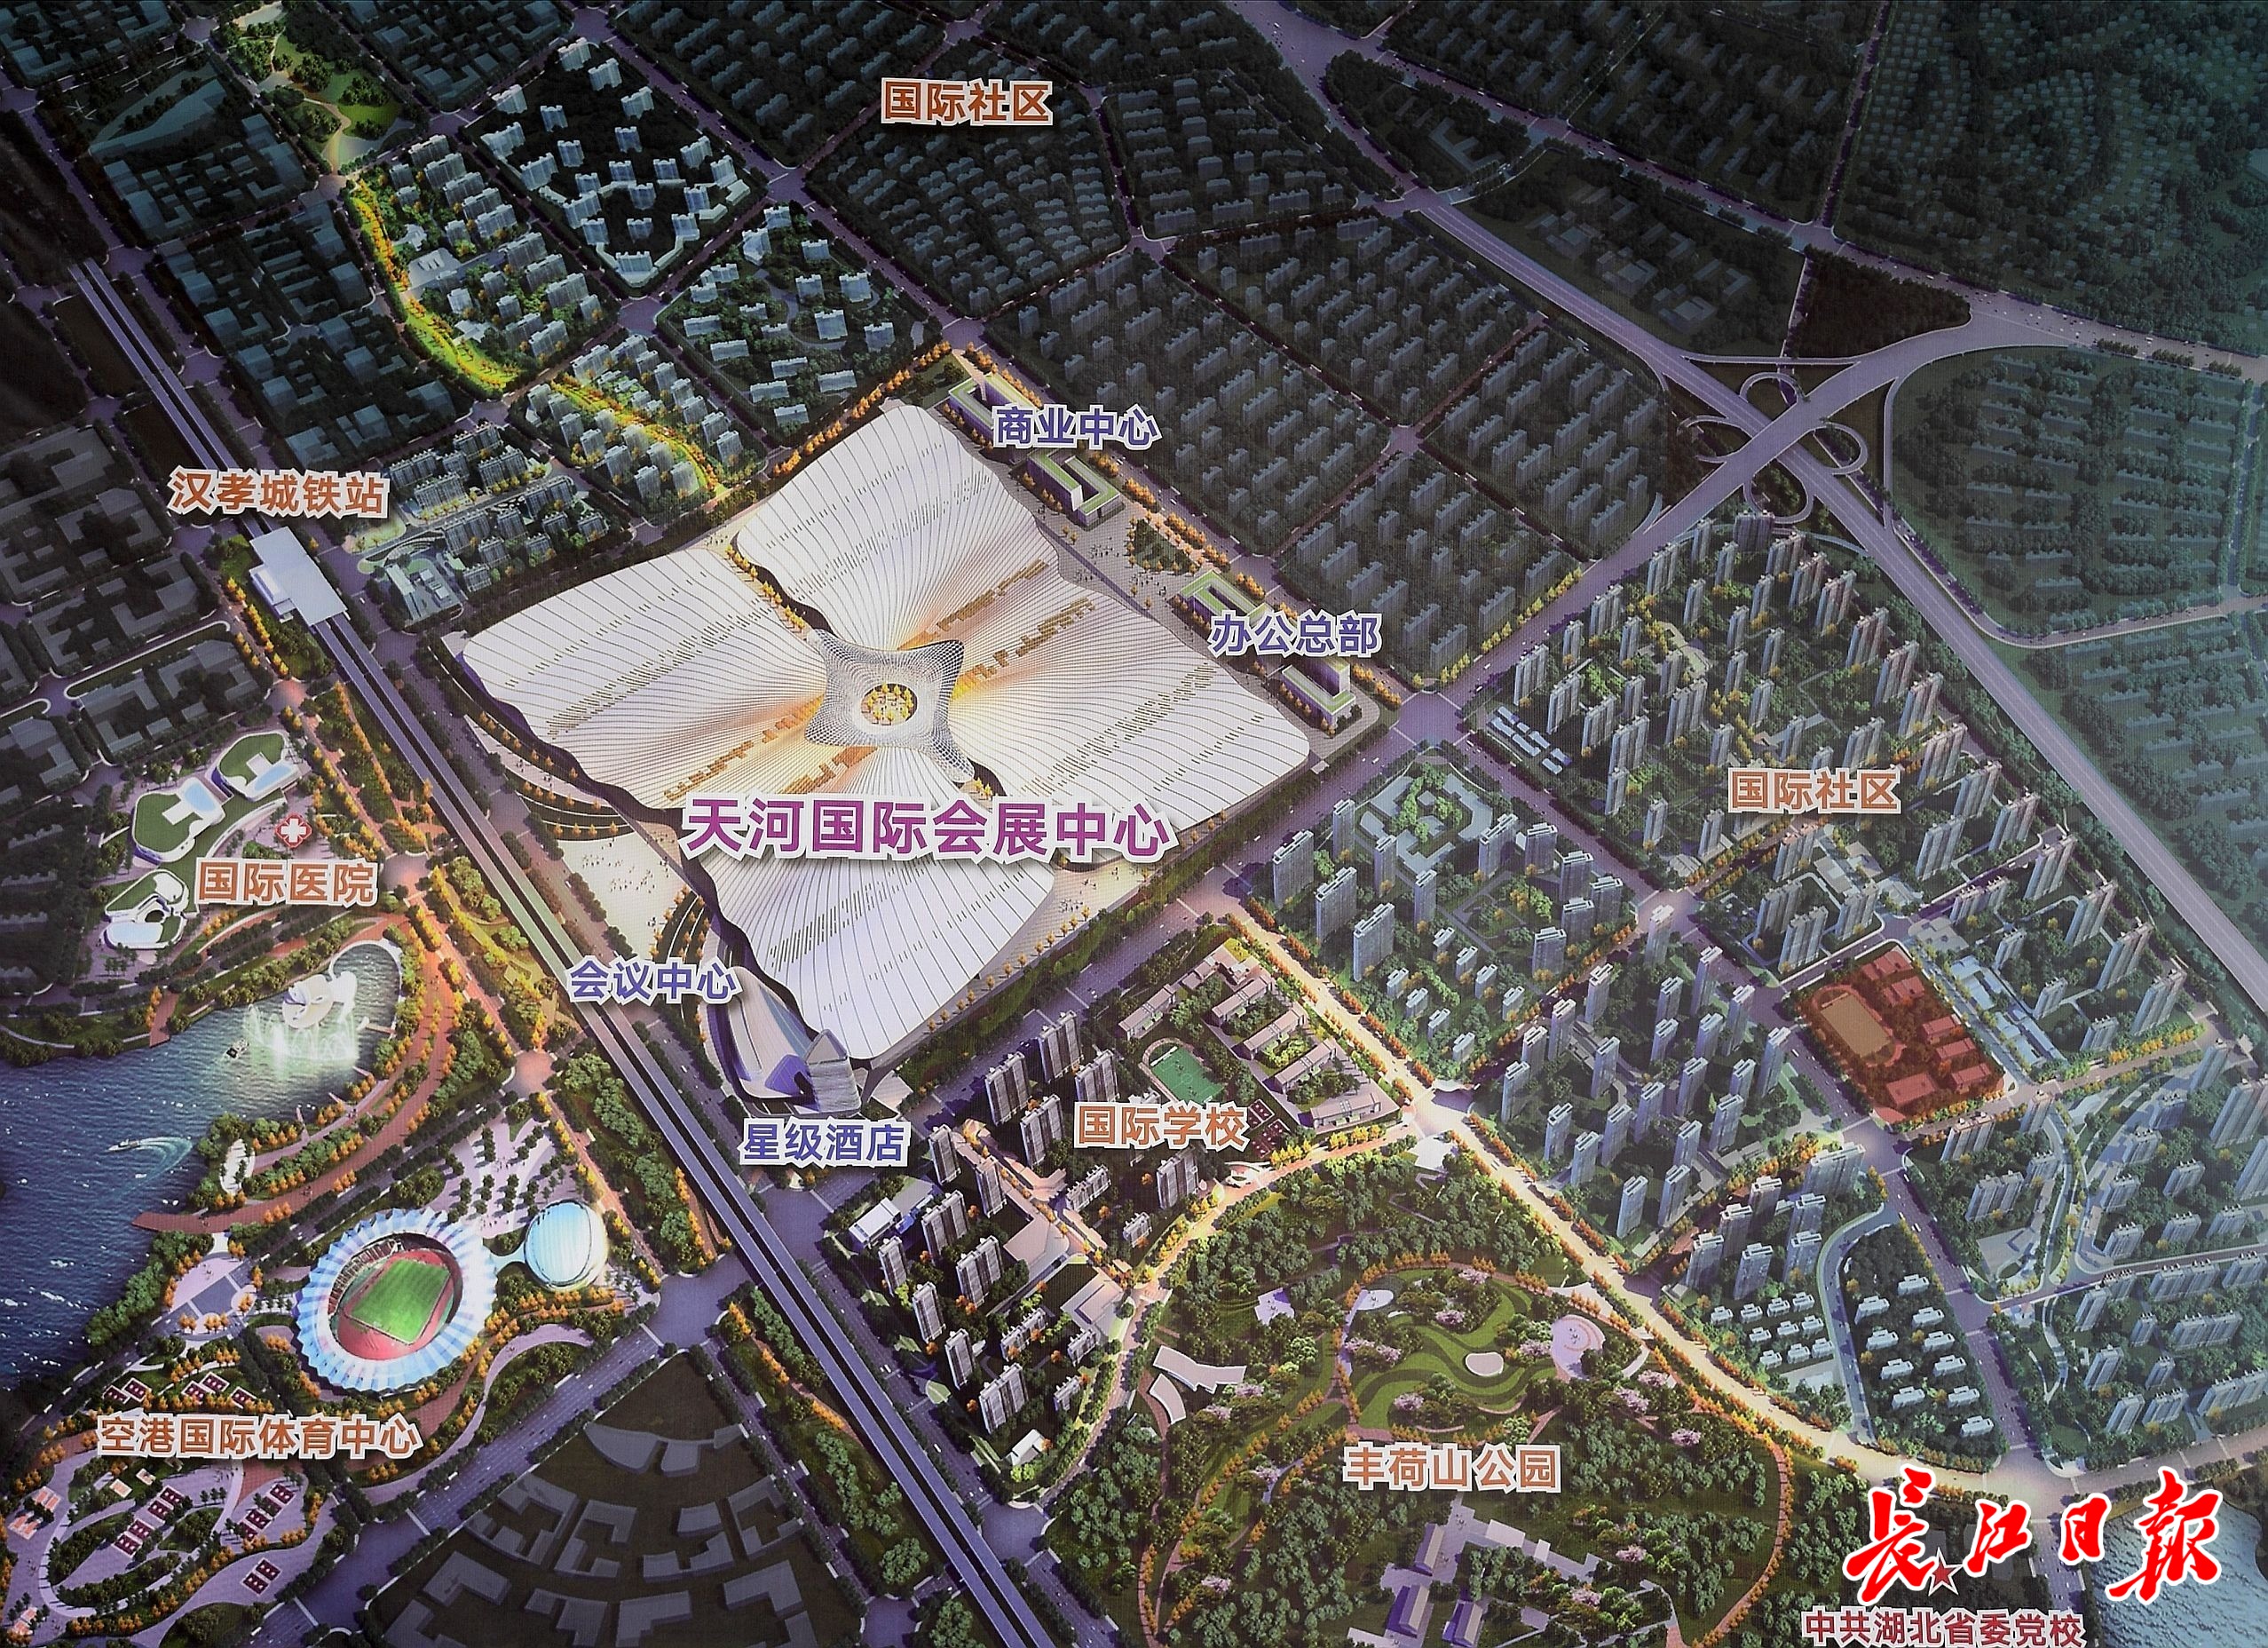 武汉天河国际会展中心:全速打造世界级综合会展中心